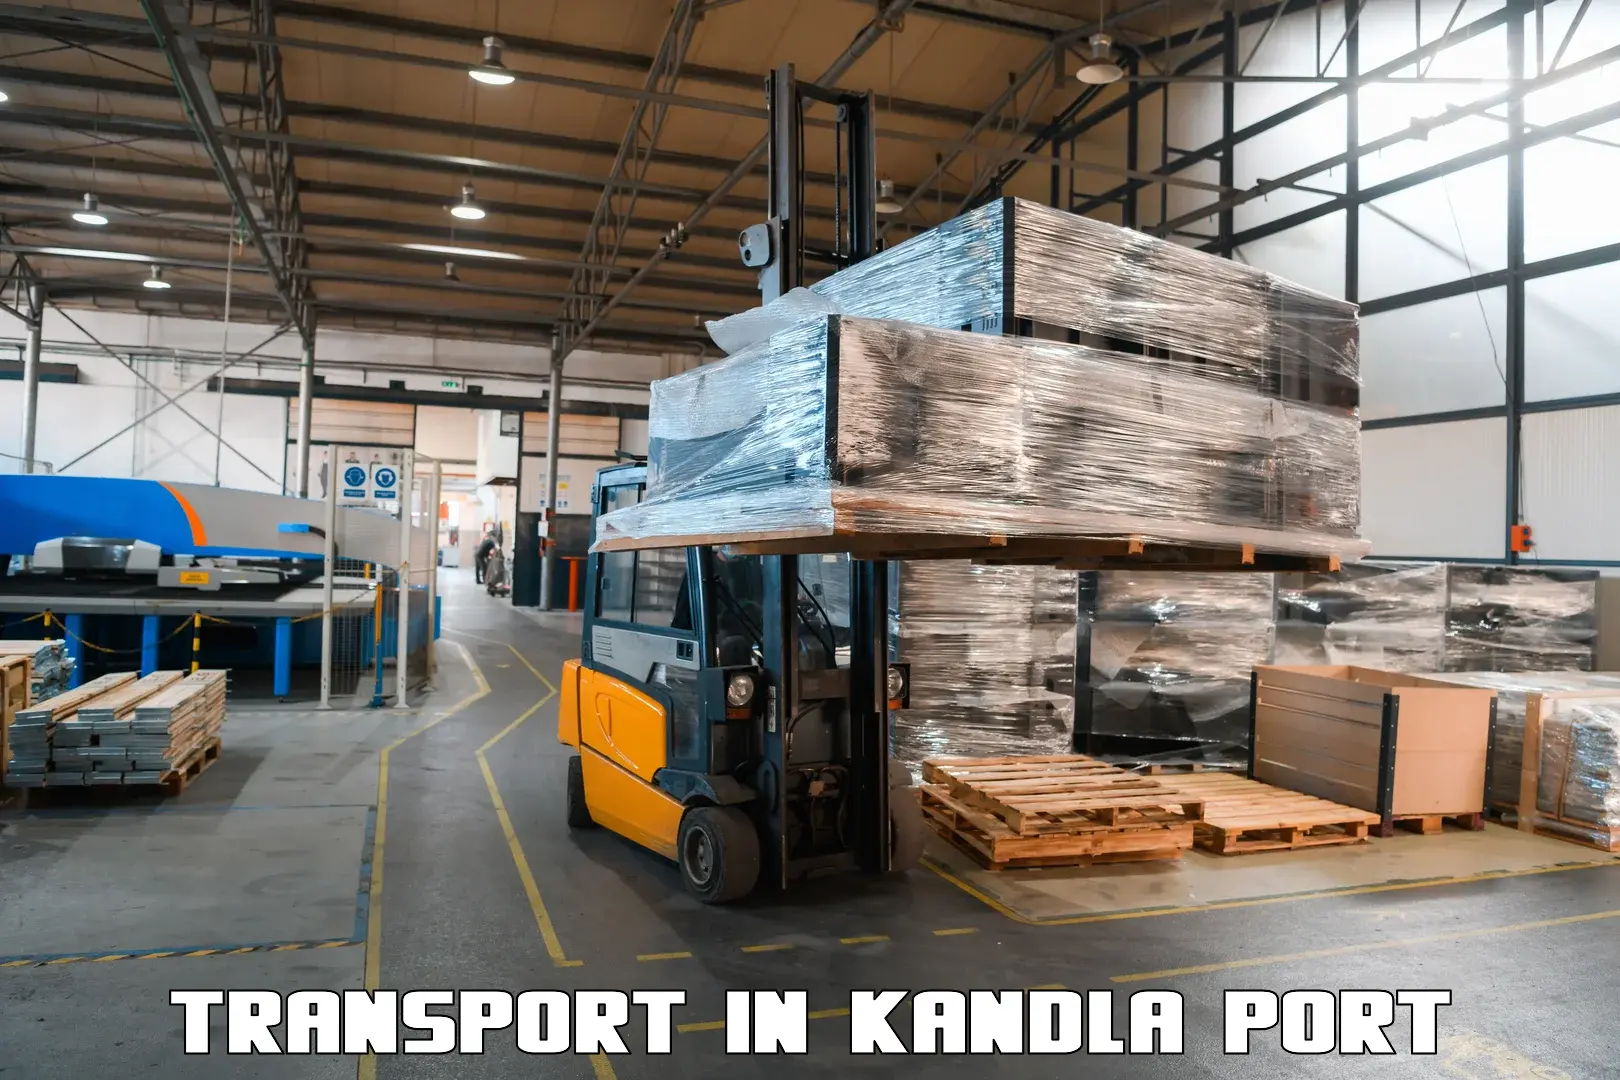 Express transport services in Kandla Port